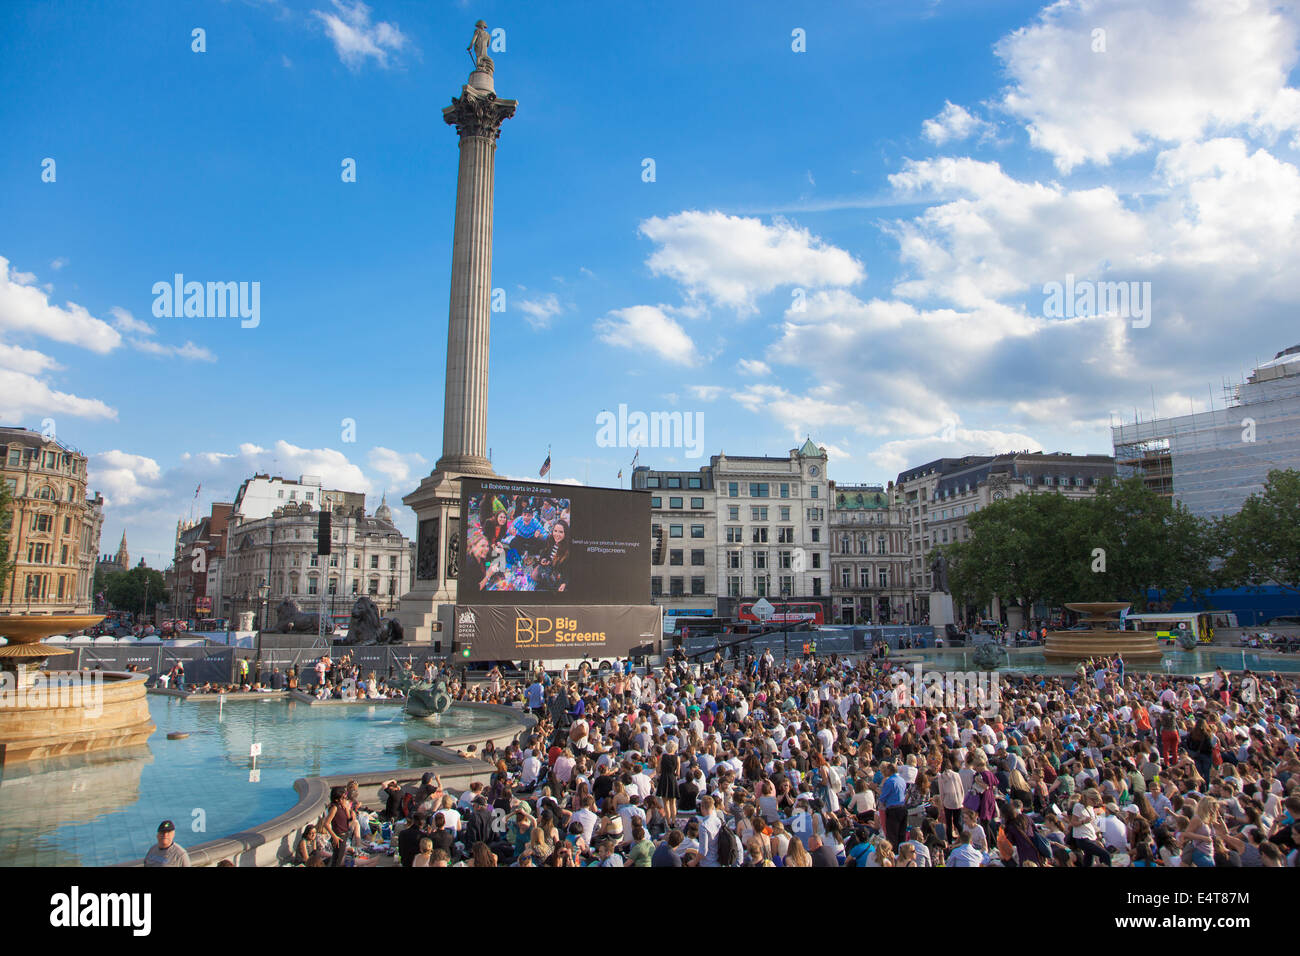 15/07/2014 London, UK - BP de l'été, les écrans en direct de la Bohème, de la Royal Opera House Trafalgar Square Banque D'Images